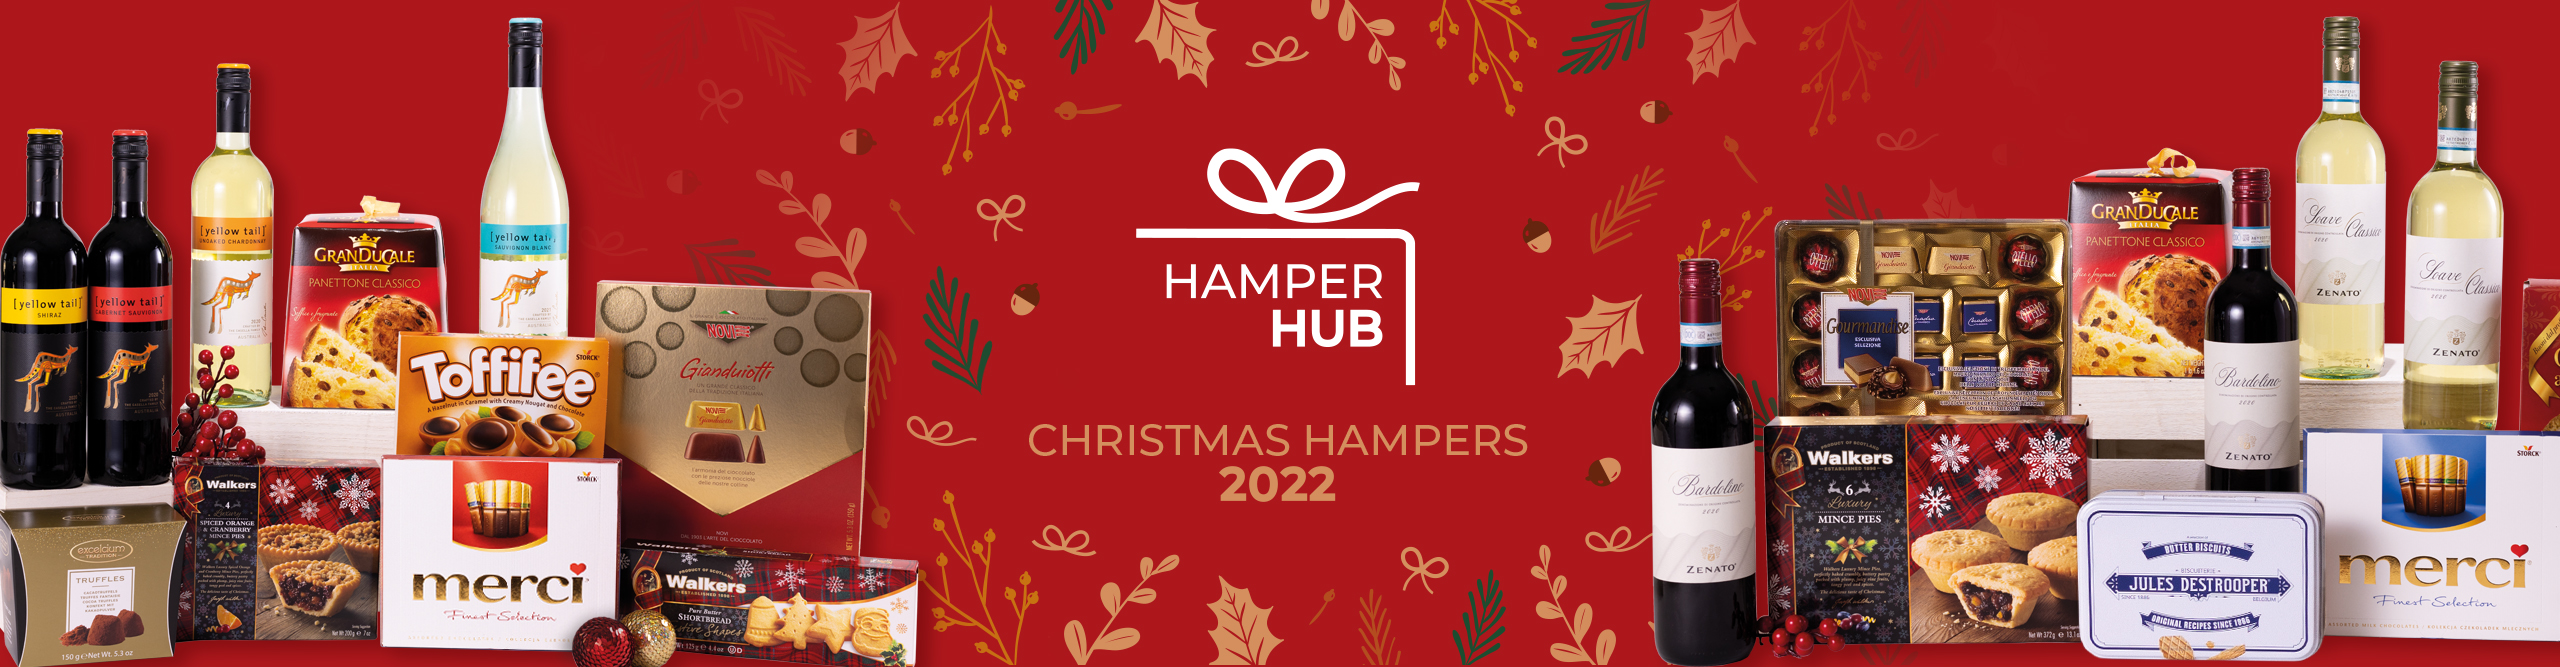 Christmas Hamper Carousel Banner 2022